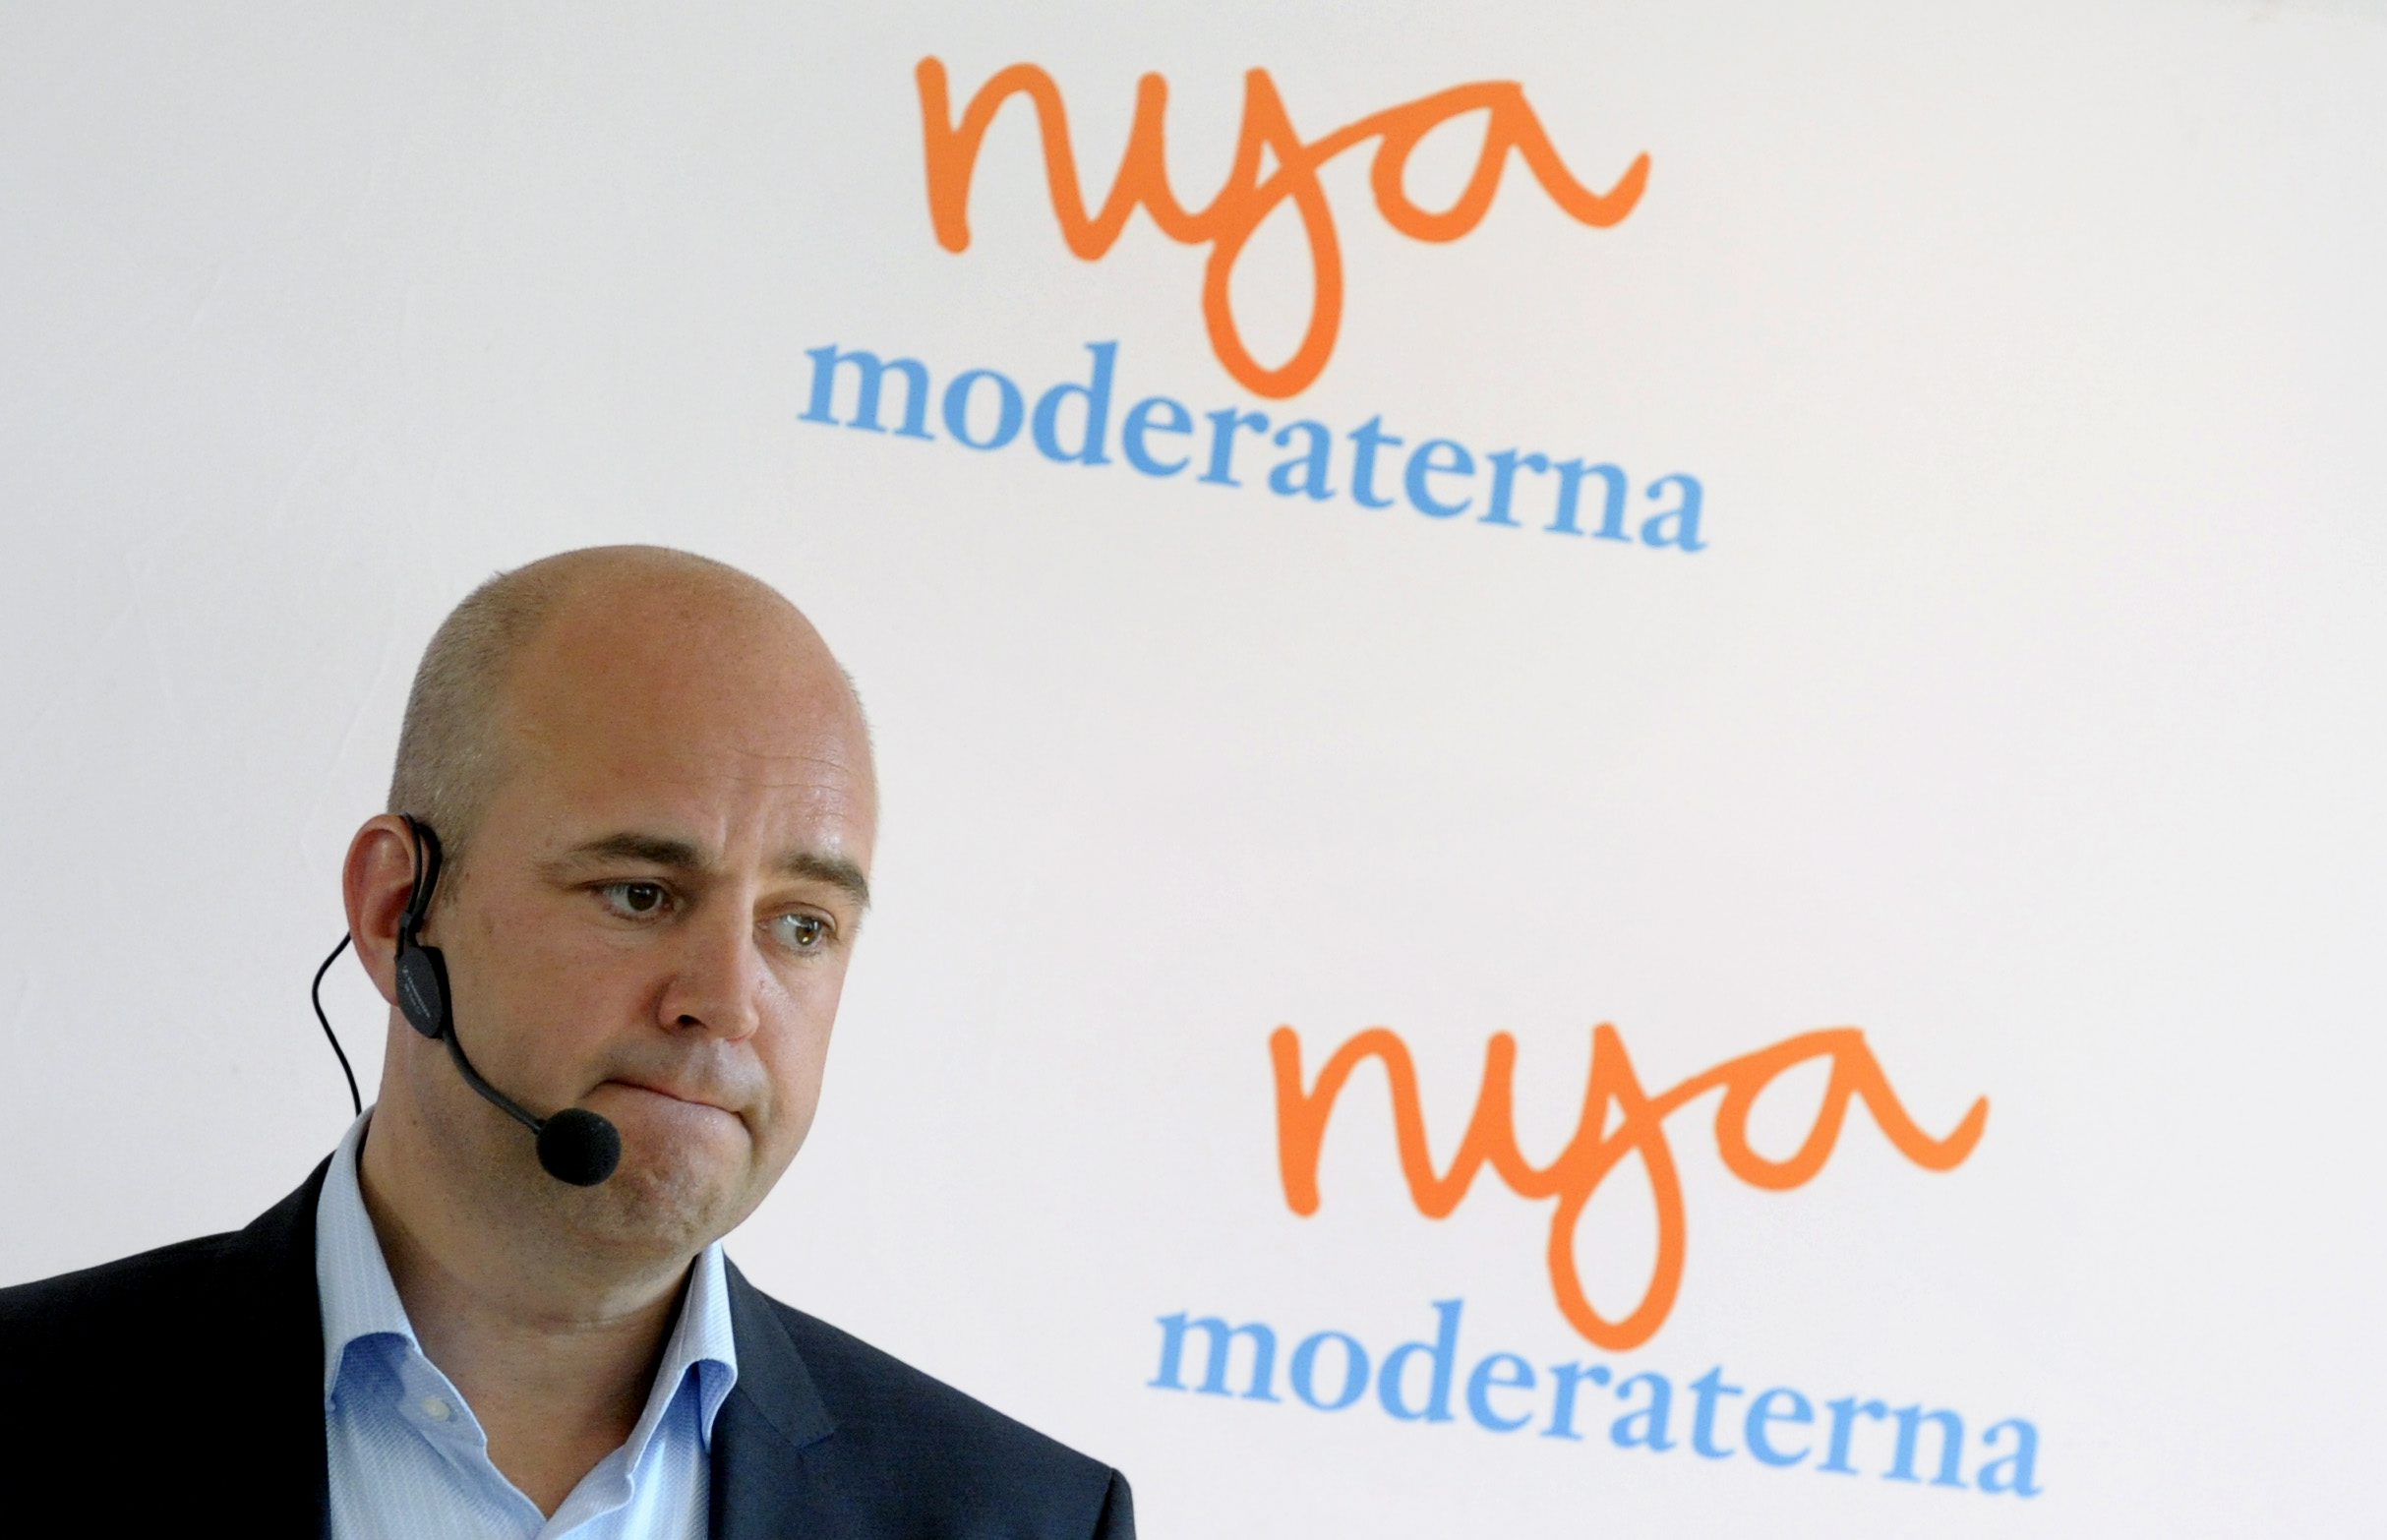 tal, Almedalsveckan, Fredrik Reinfeldt, Politik, Almedalen, Moderaterna